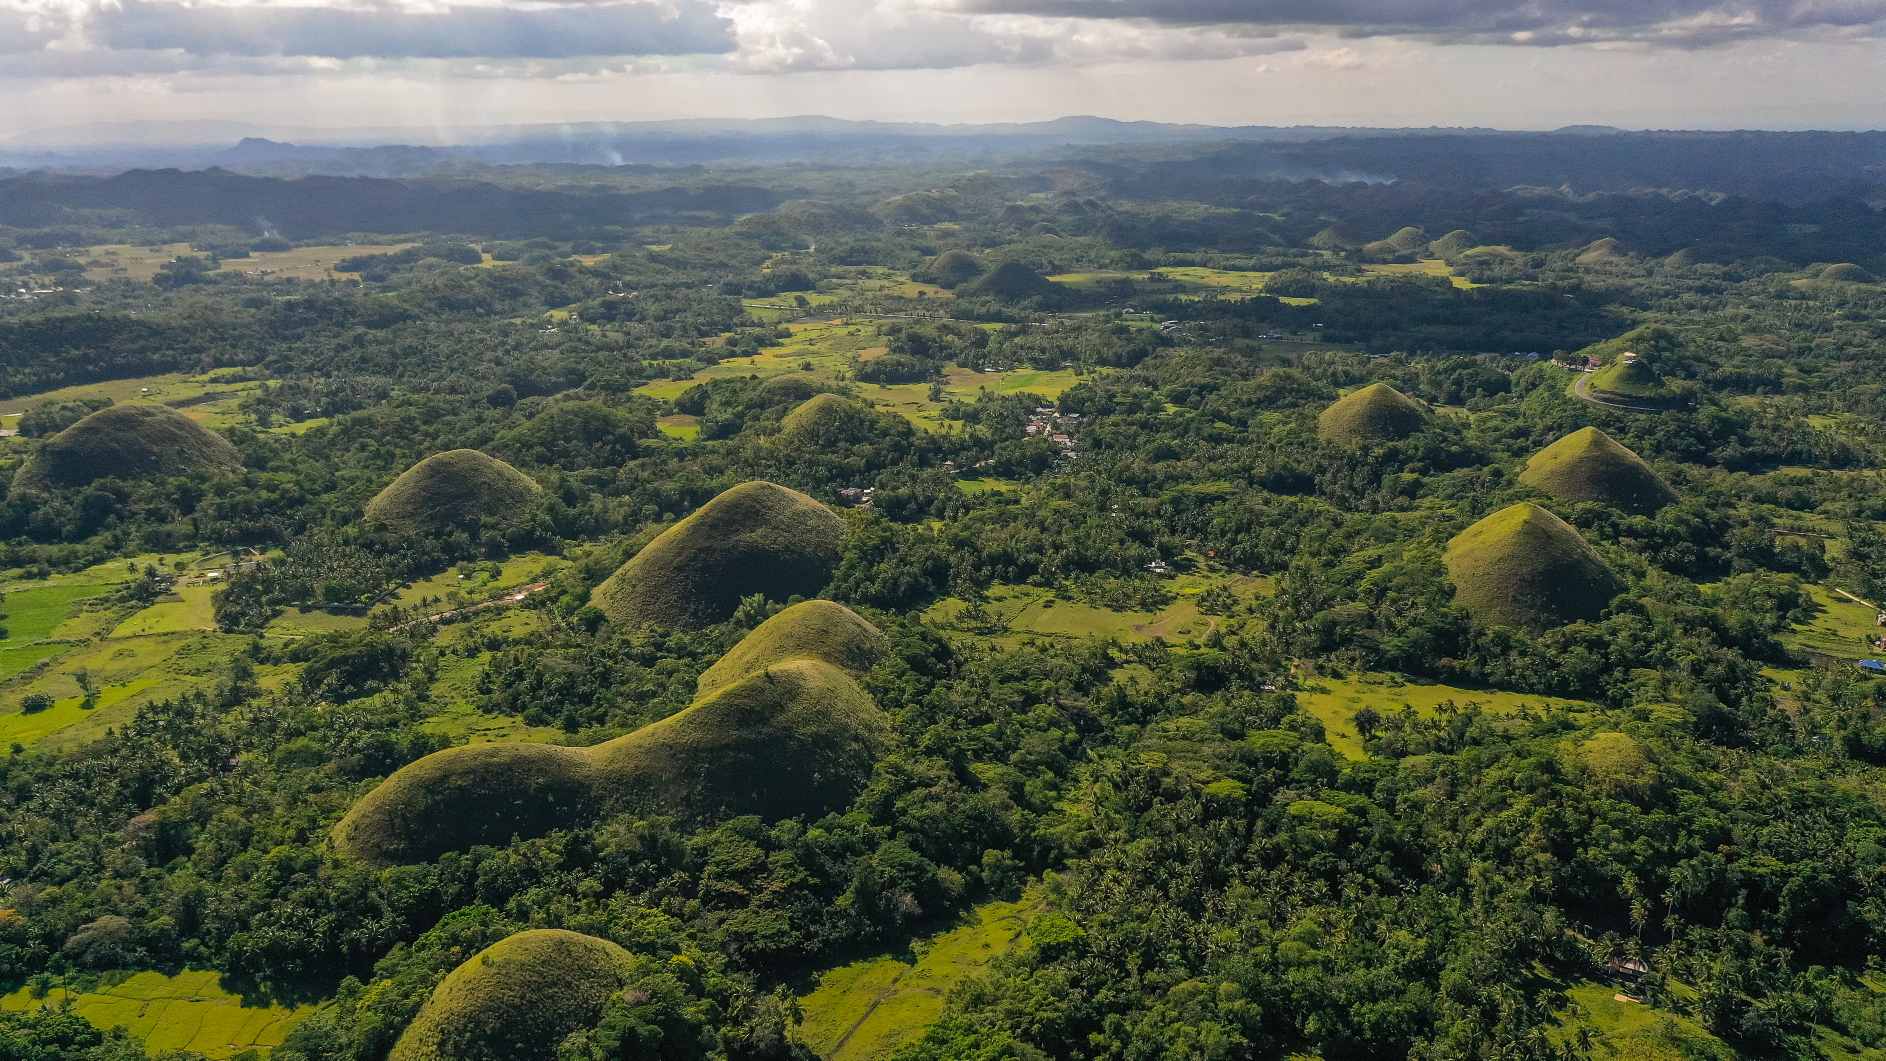 Hiwwele tëscht Akerland. Chocolate Hills natierlech Landmark, Bohol Insel, Philippinnen. © Bildkreditt: Alexey Kornylyev | Lizenzéiert vun DreamsTime, ID: 223476330